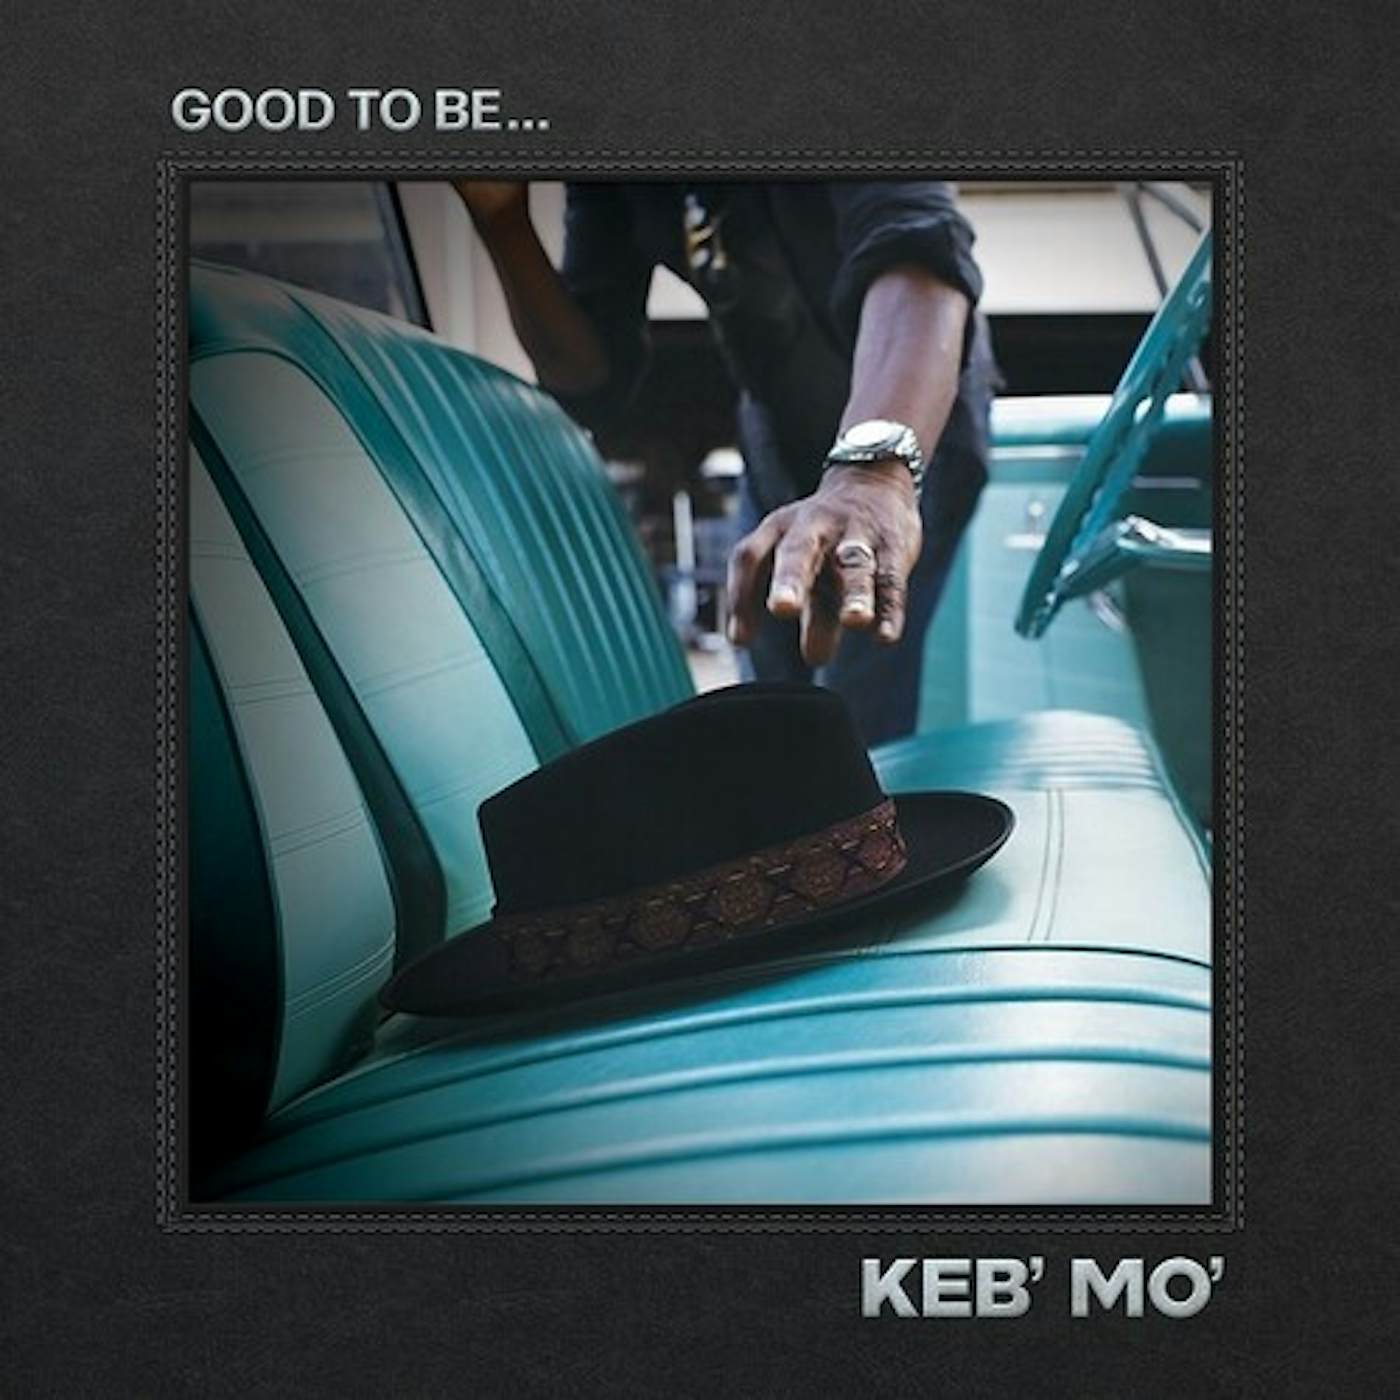 Keb' Mo' GOOD TO BE CD